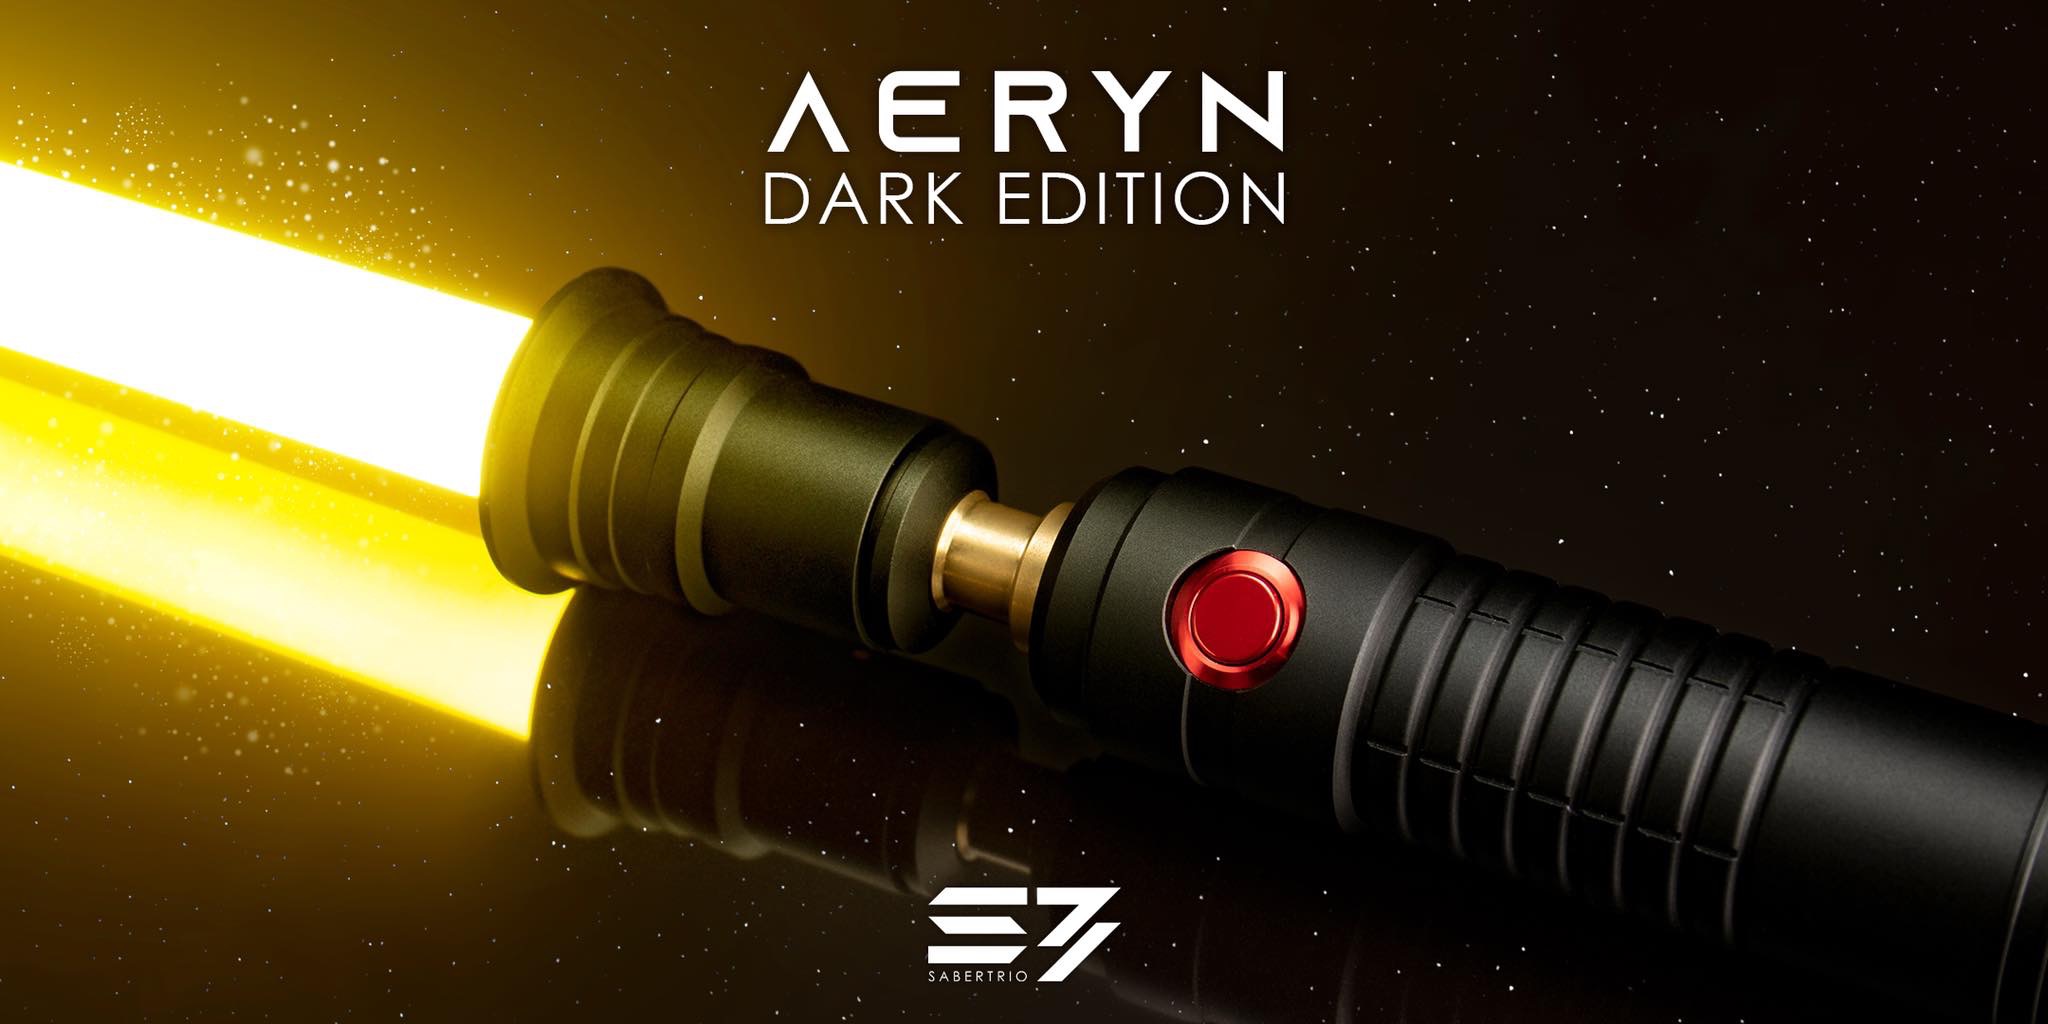 Aeryn Dark Edition 57 Sabertrio